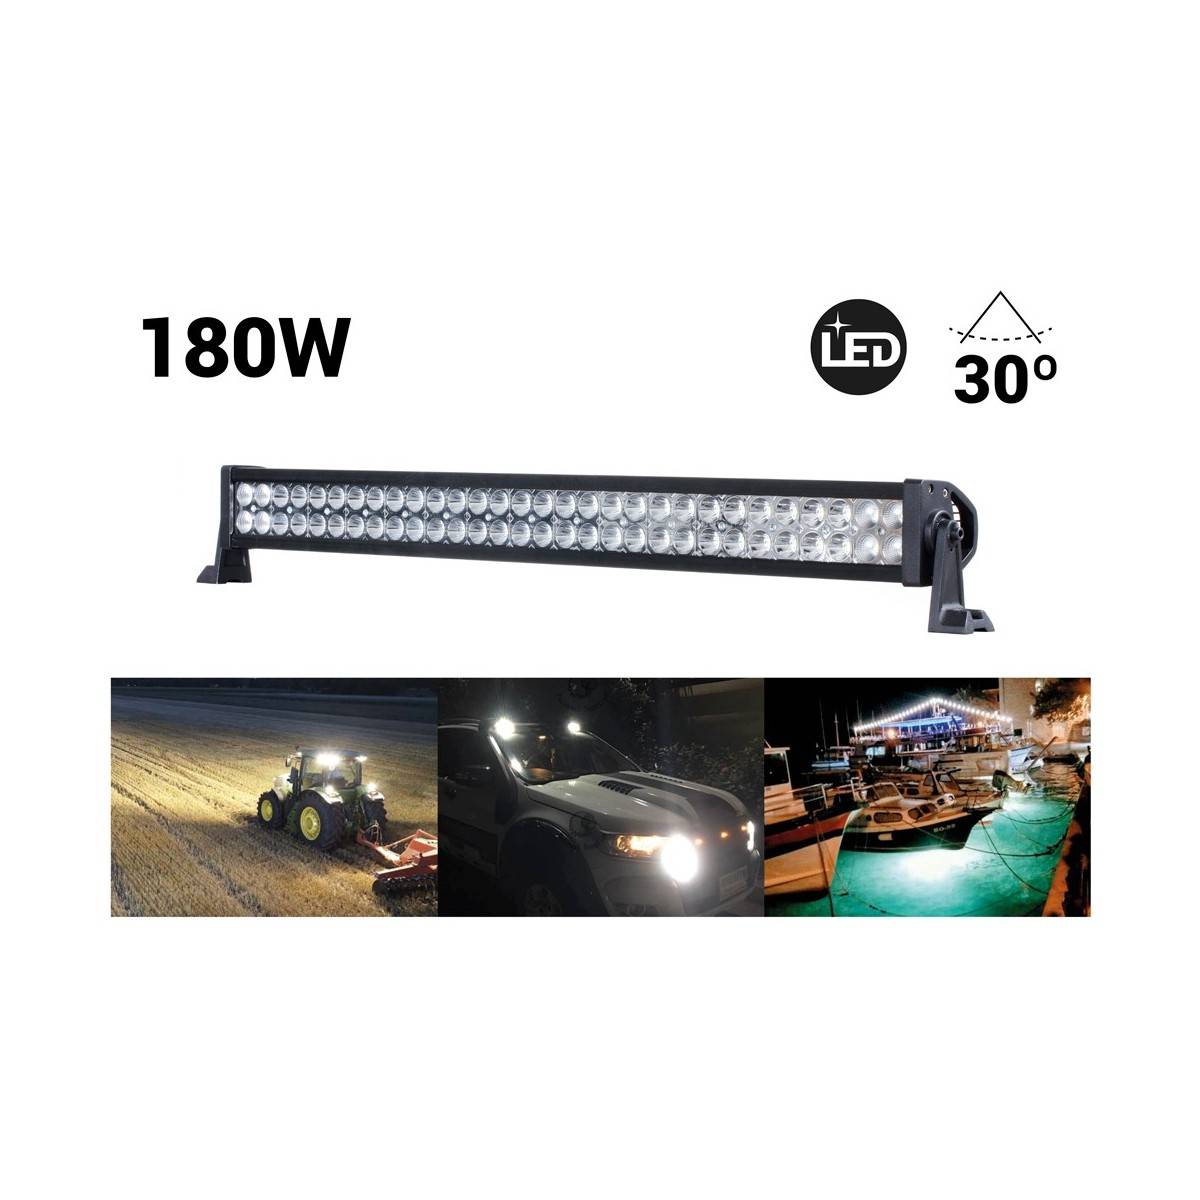 LED bar 4x4, off-road 180W